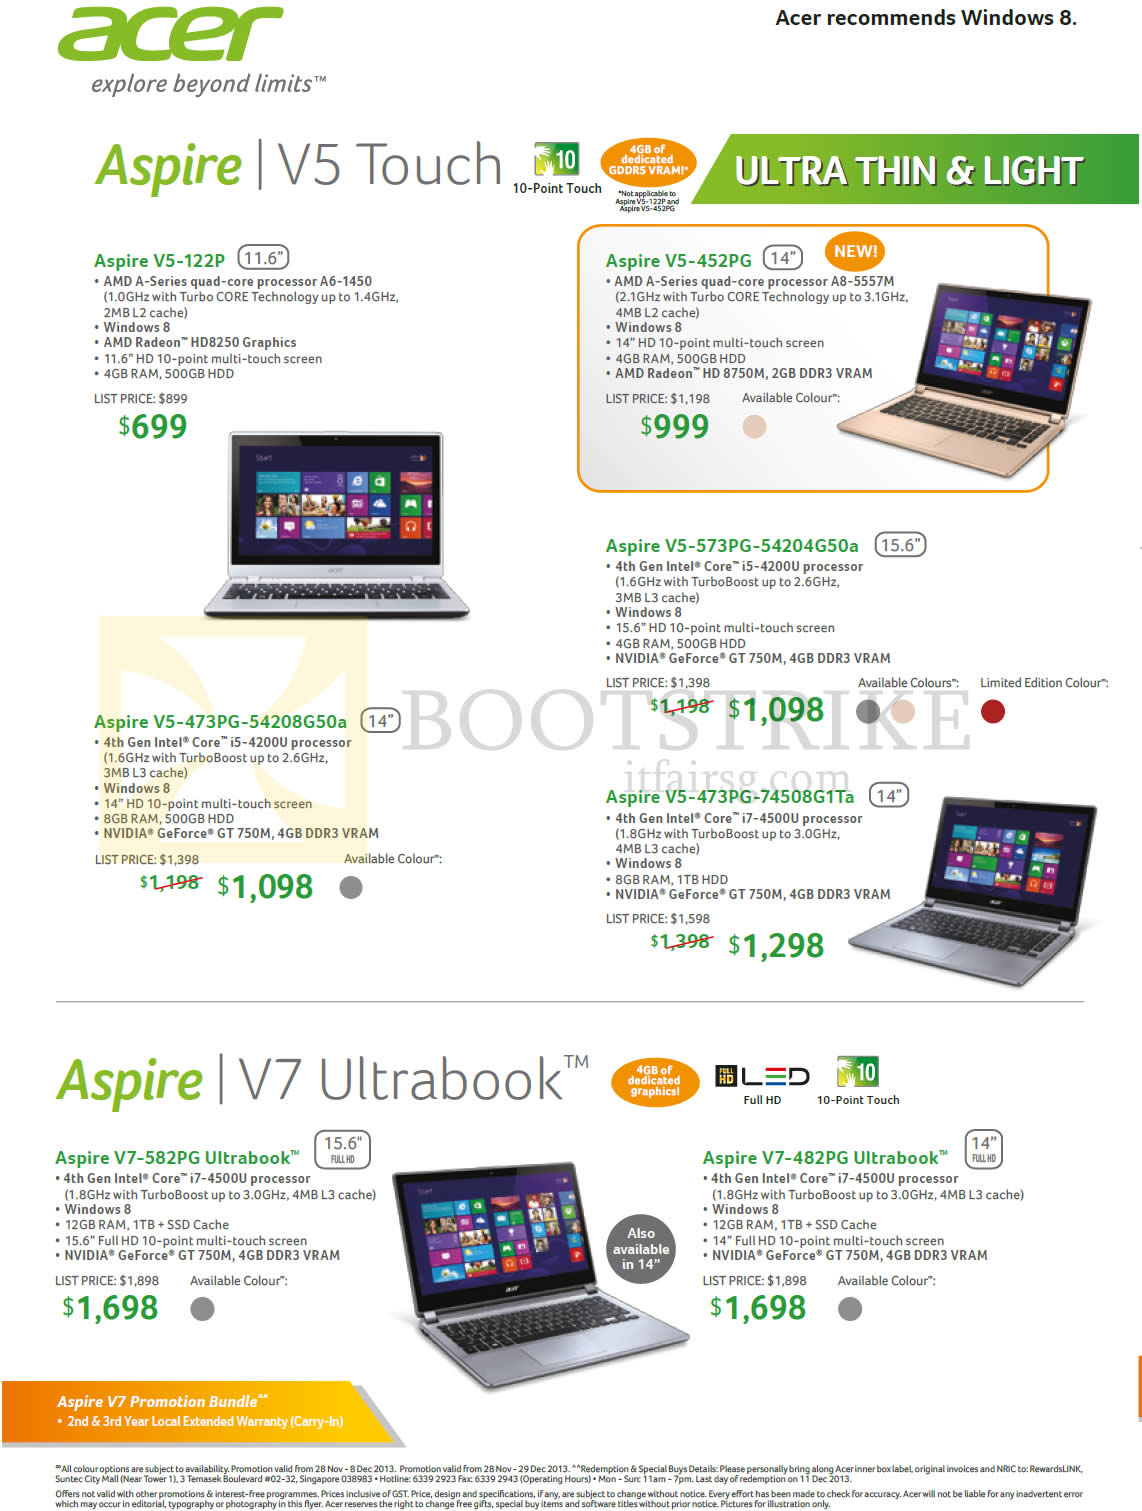 SITEX 2013 price list image brochure of Acer Notebooks Aspire V5 Touch V5-122P, 452PG, 473PG-54208G50a, 573PG-54204G50a, 473PG-74508G1Ta, V7-582Pg, V7-482PG